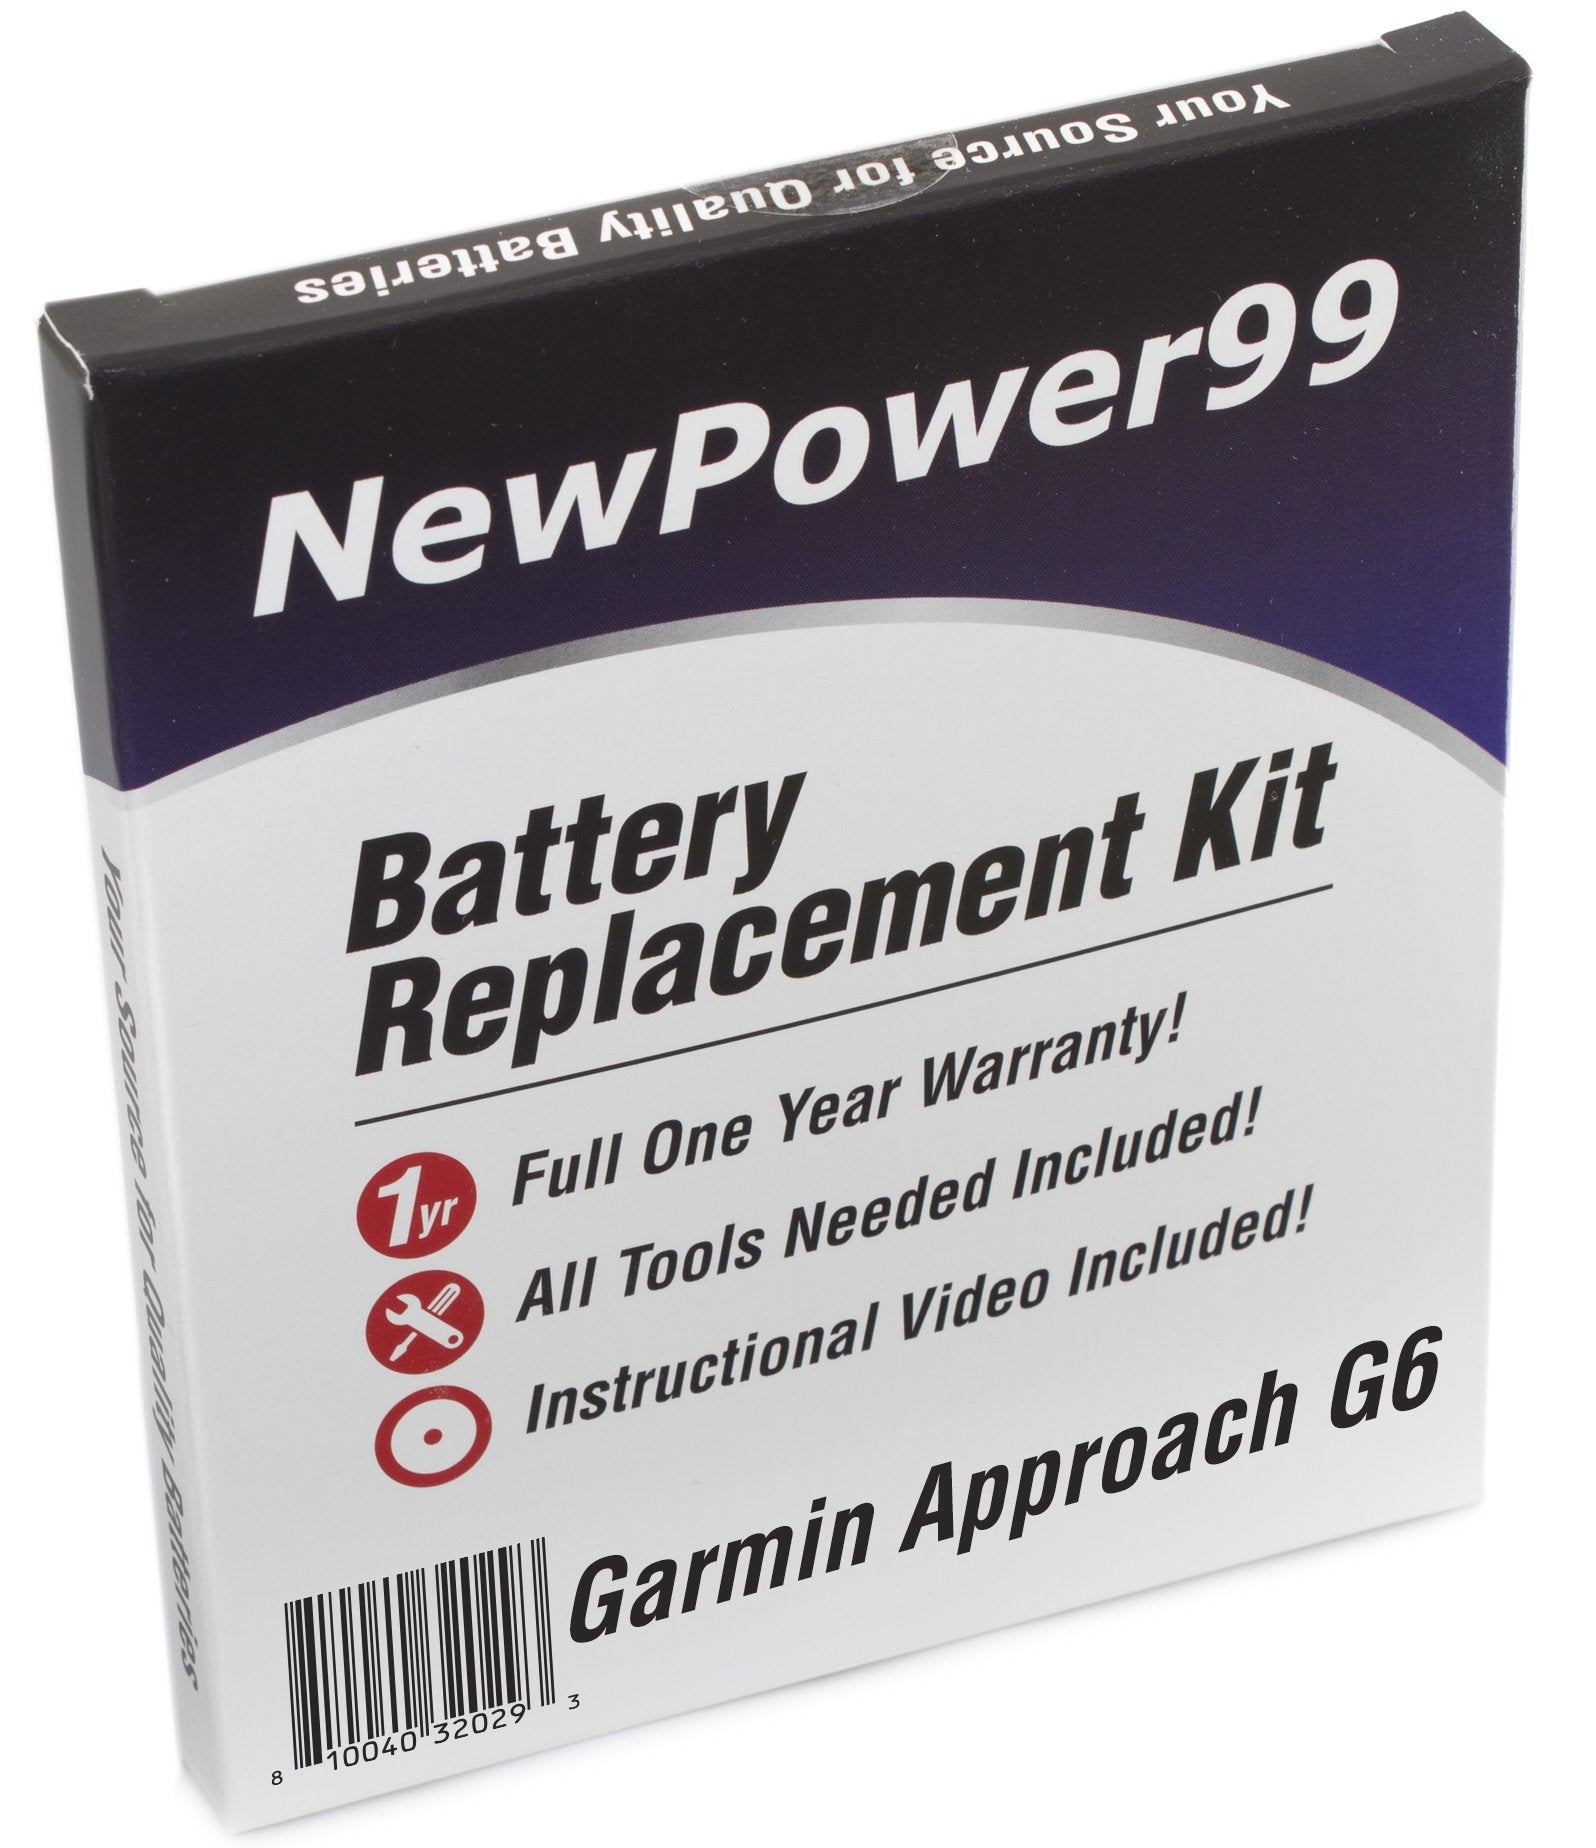 garmin-approach-g6-battery-replacement-kit-extended-life-newpower99